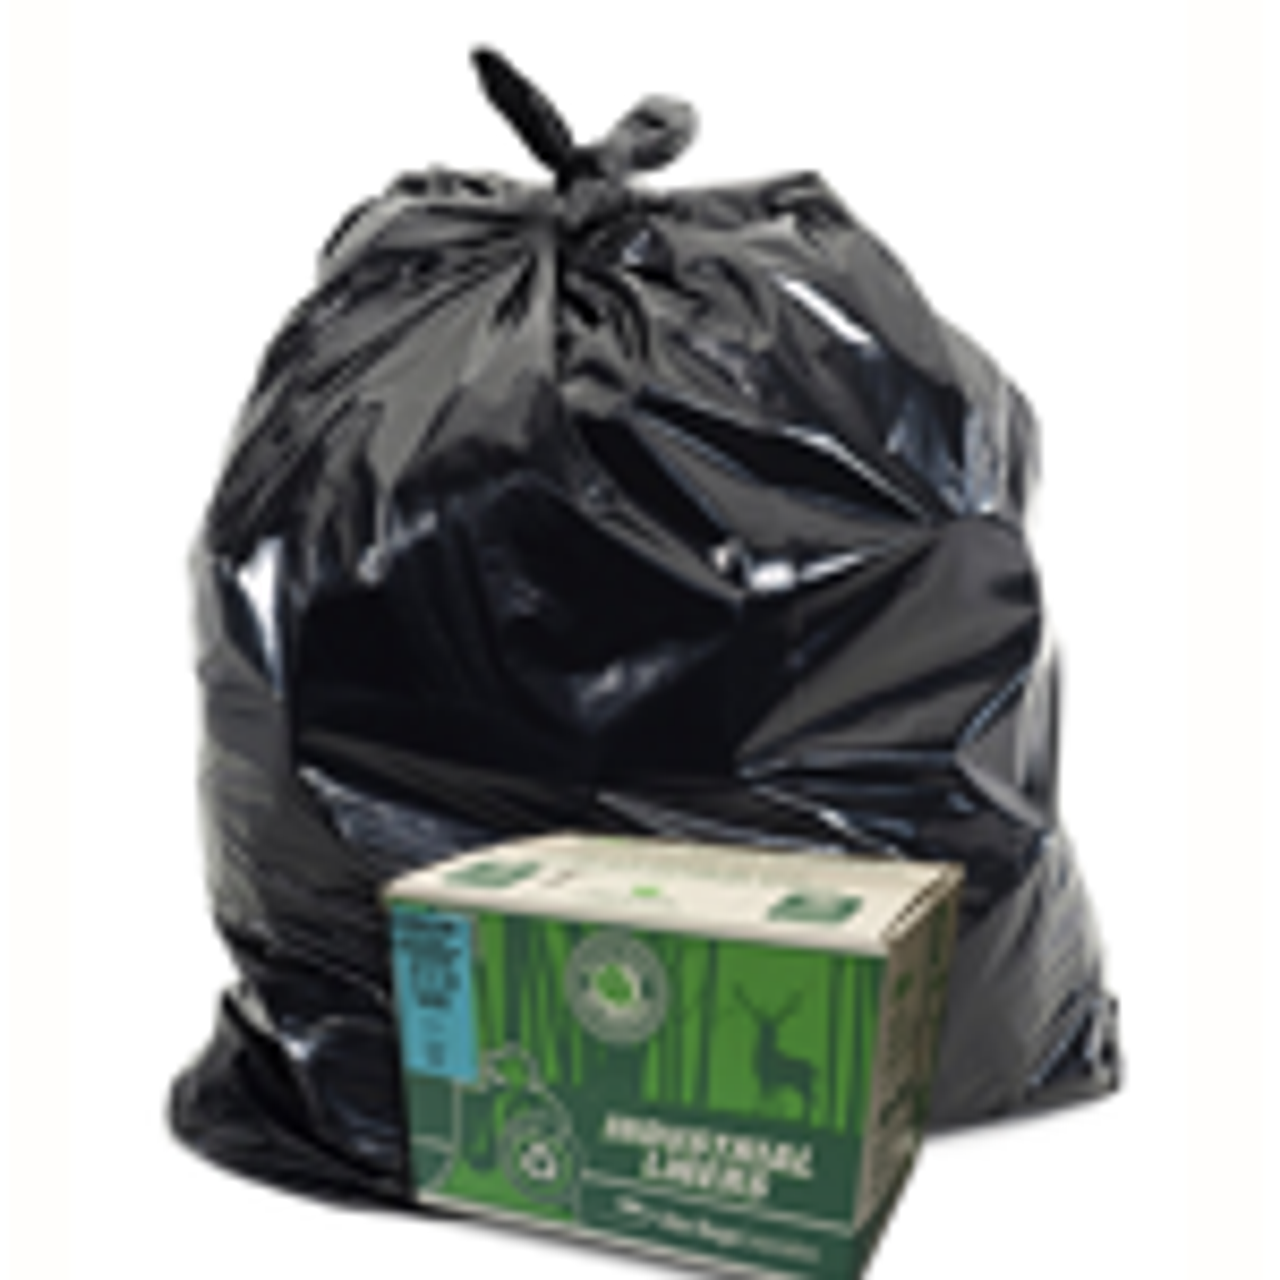 22" x 24" Industrial Garbage Bags - Black - 500